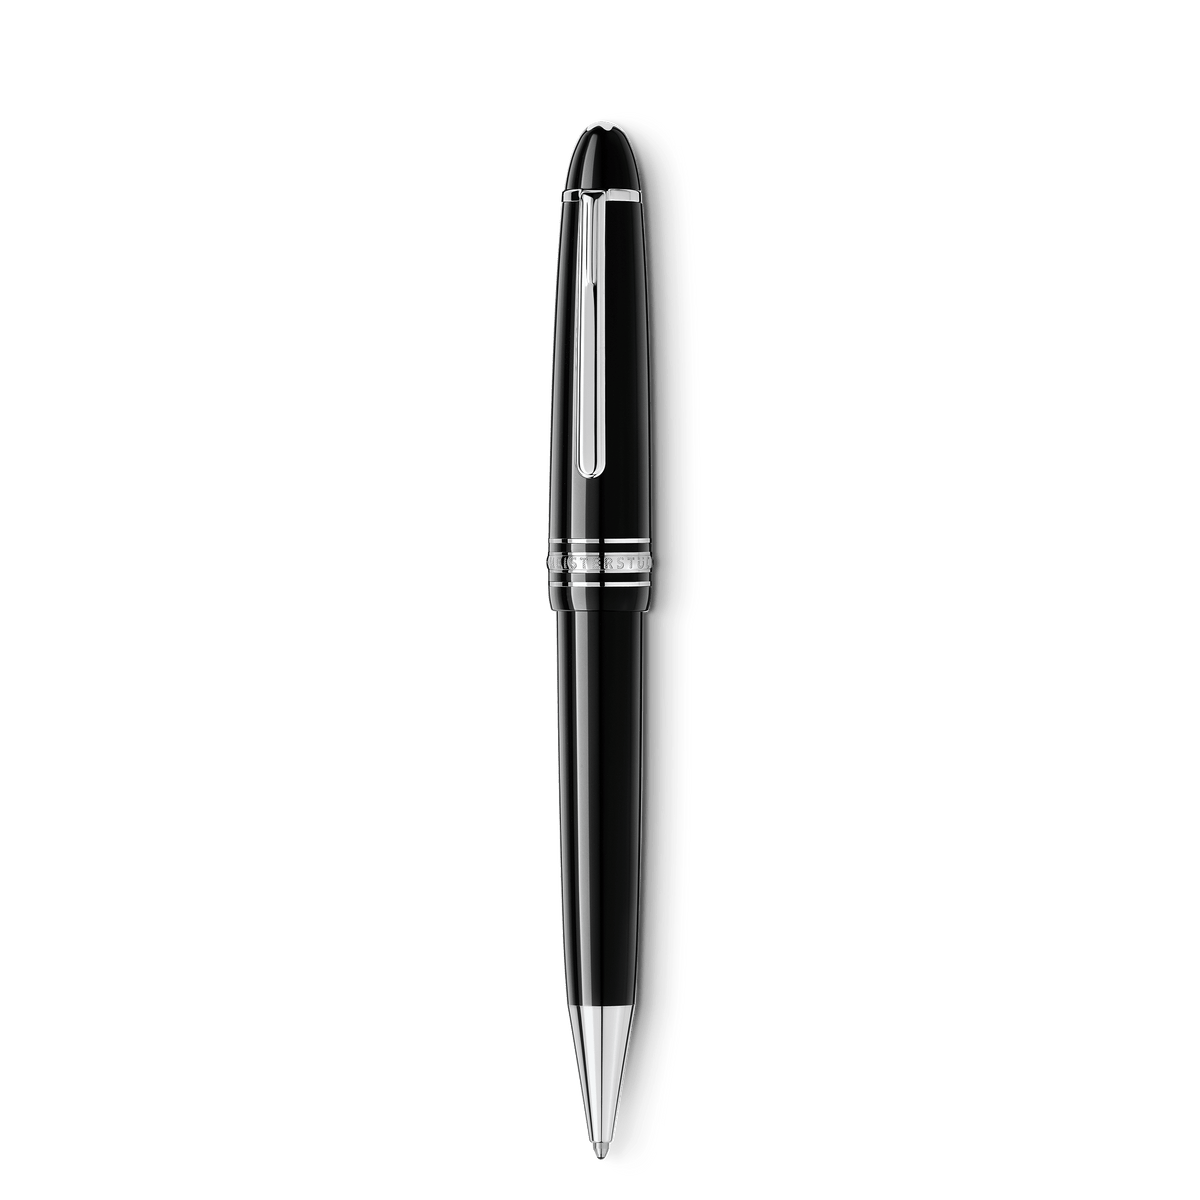 Meisterstück Platinum-Coated LeGrand Ballpoint Pen